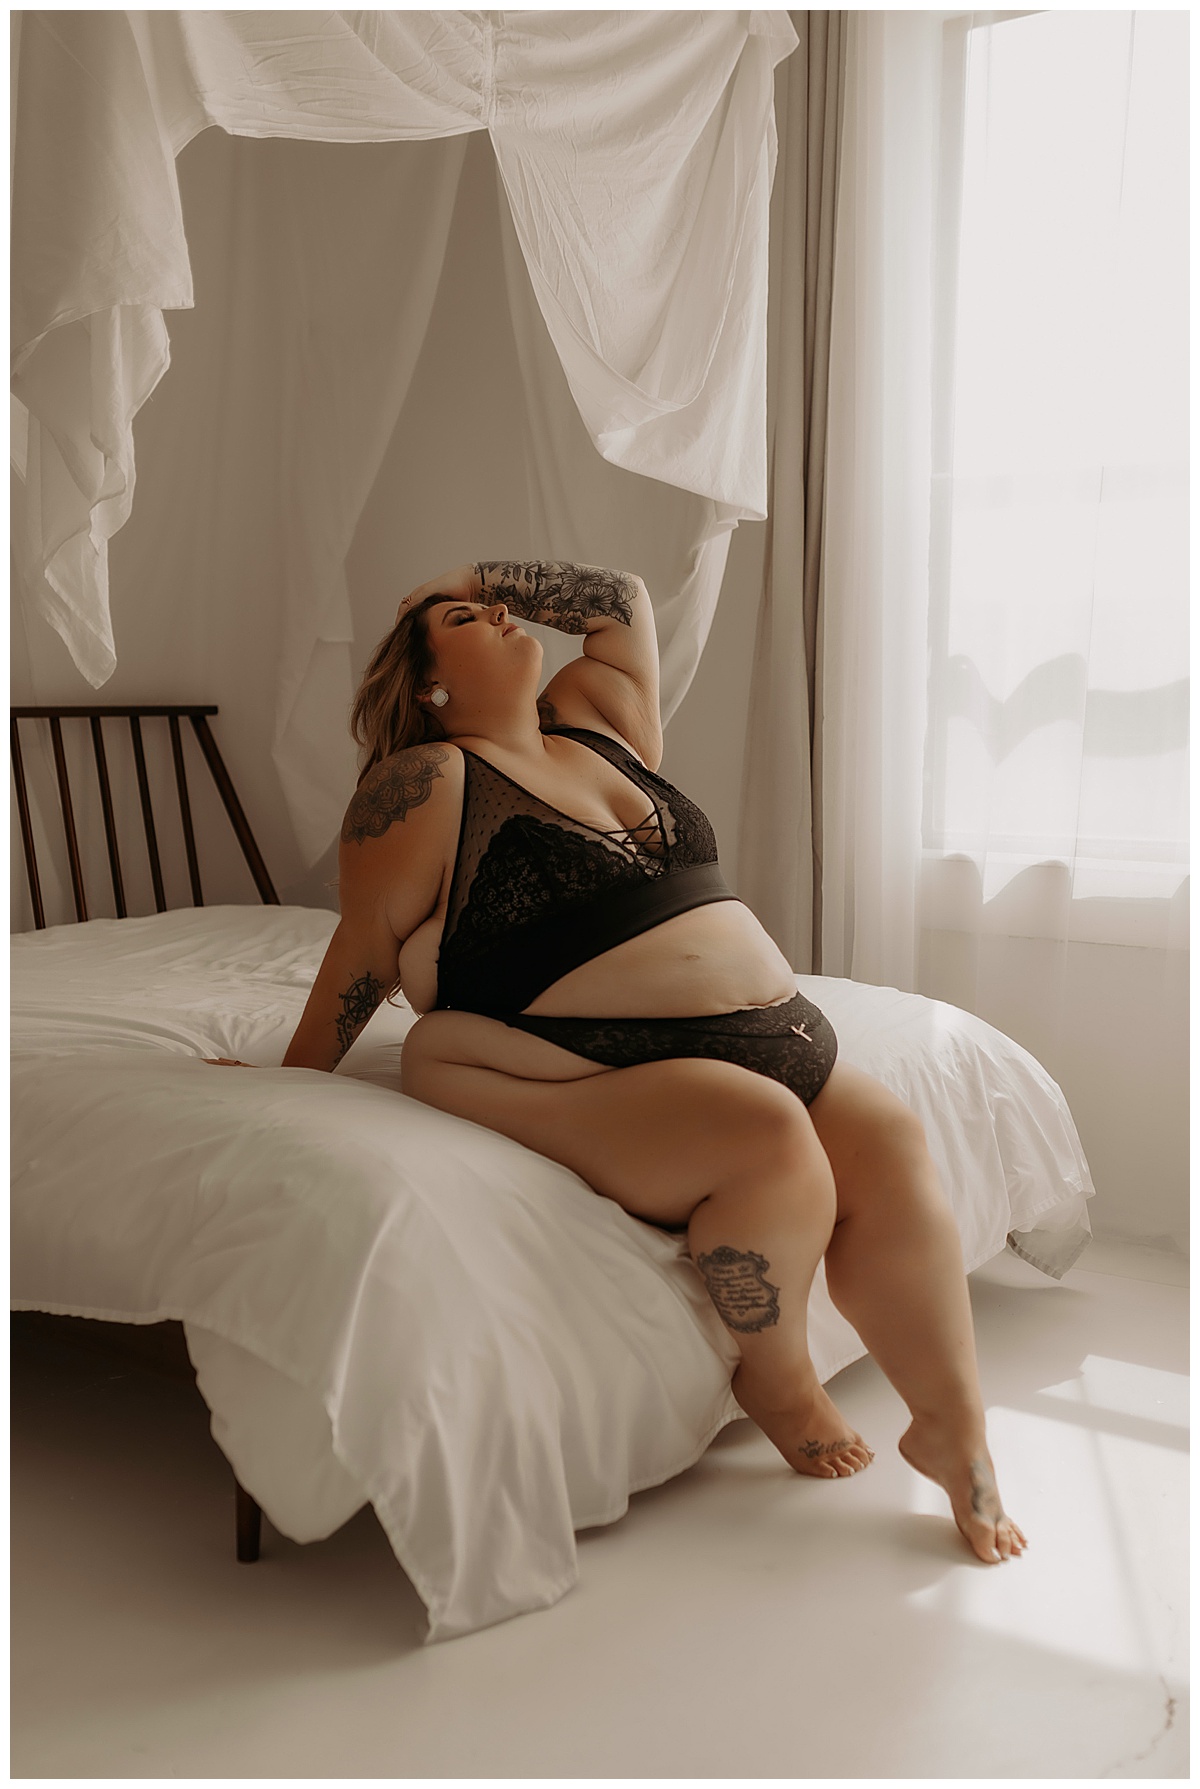 Girl leans back onto the bed wearing black lingerie from Torrid Lingerie